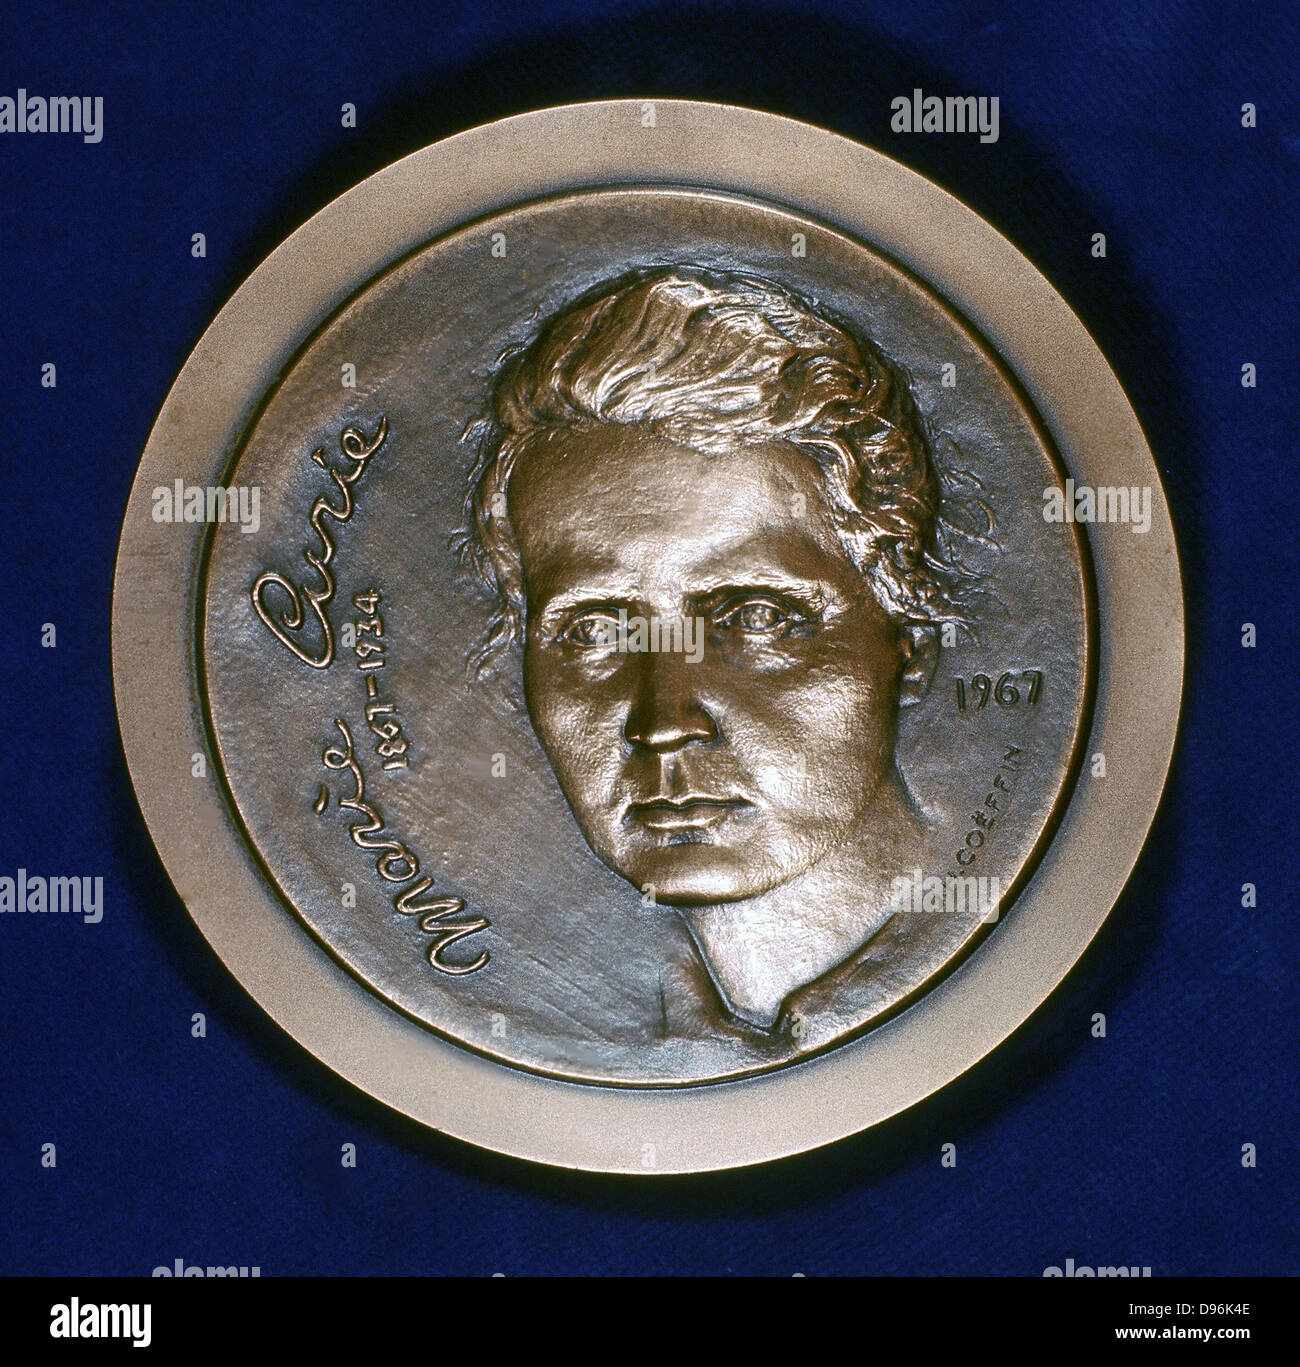 Marie Sklodowska Curie (1867-1934) in Polen geborenen französischen Physiker. Vorderseite der Medaille 1967 erteilt den 100. Jahrestag ihrer Geburt zu gedenken und feiern die Isolation von Polonium und Radium, die sie im Jahr 1898 erreicht Stockfoto